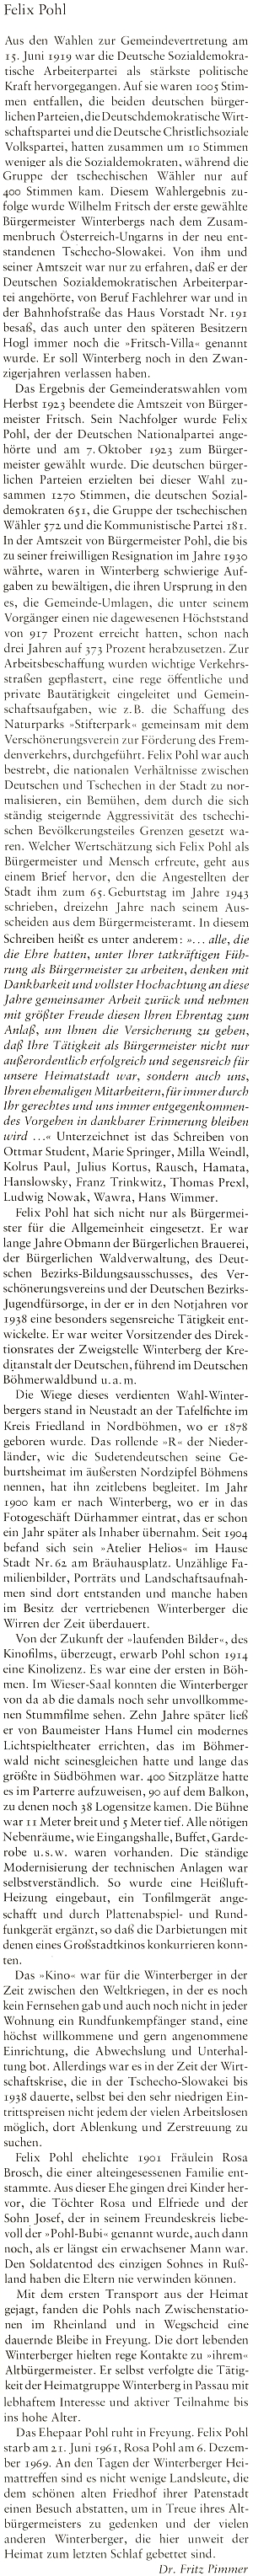 Obsáhlý text Fritze Pimmera o něm v krajanské pamětní knize